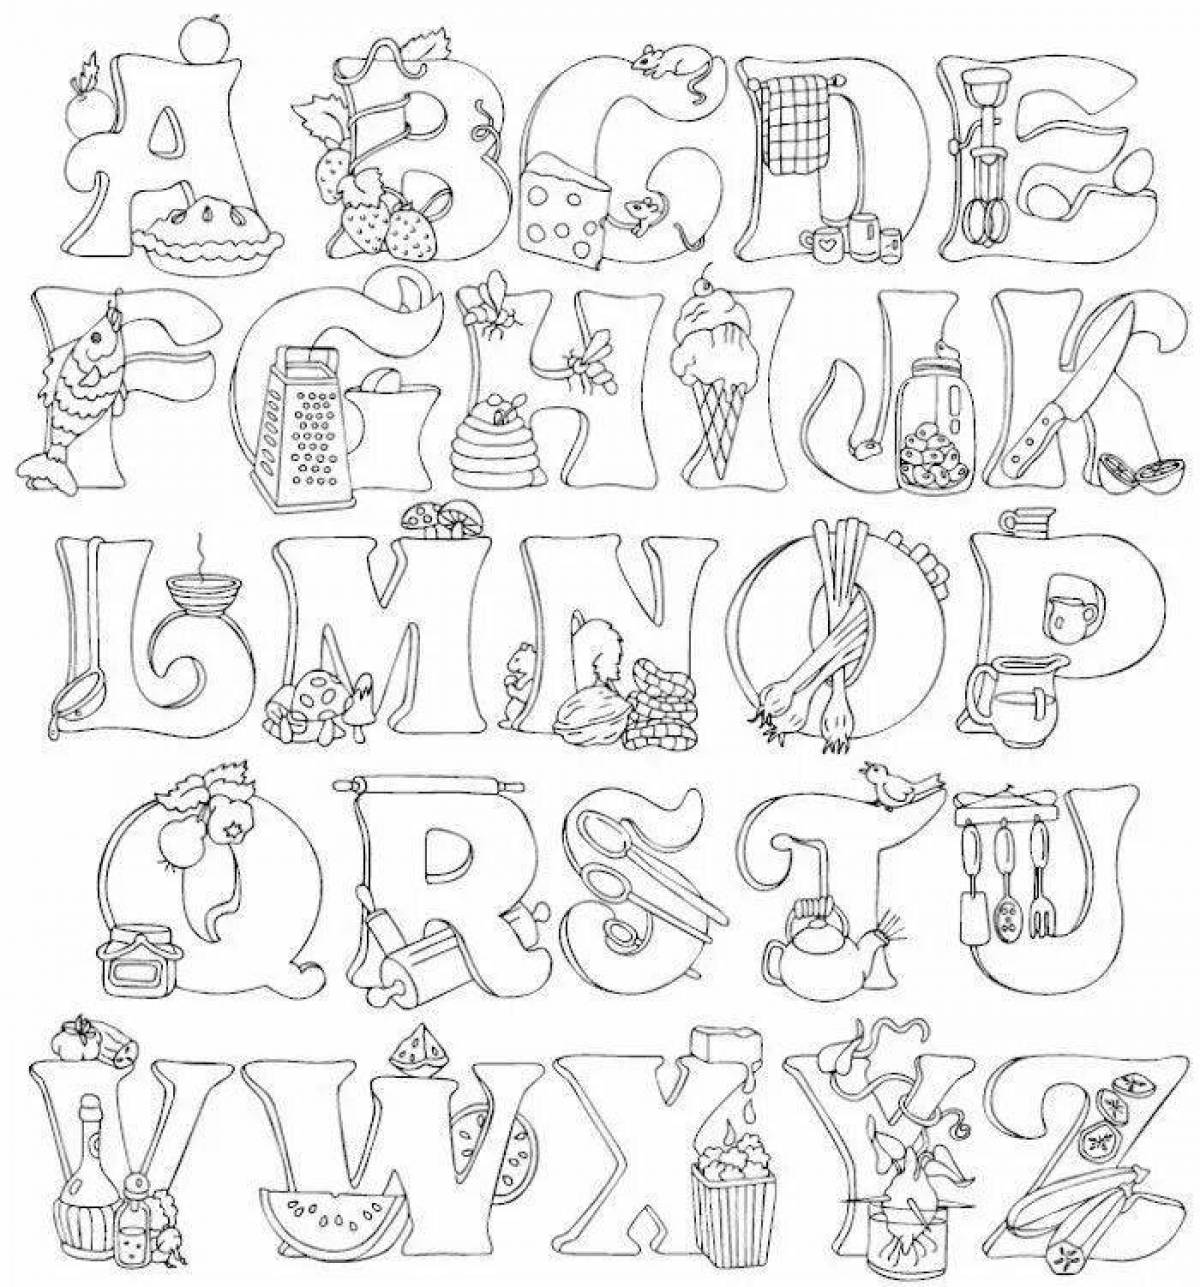 Incredible alphabet coloring book